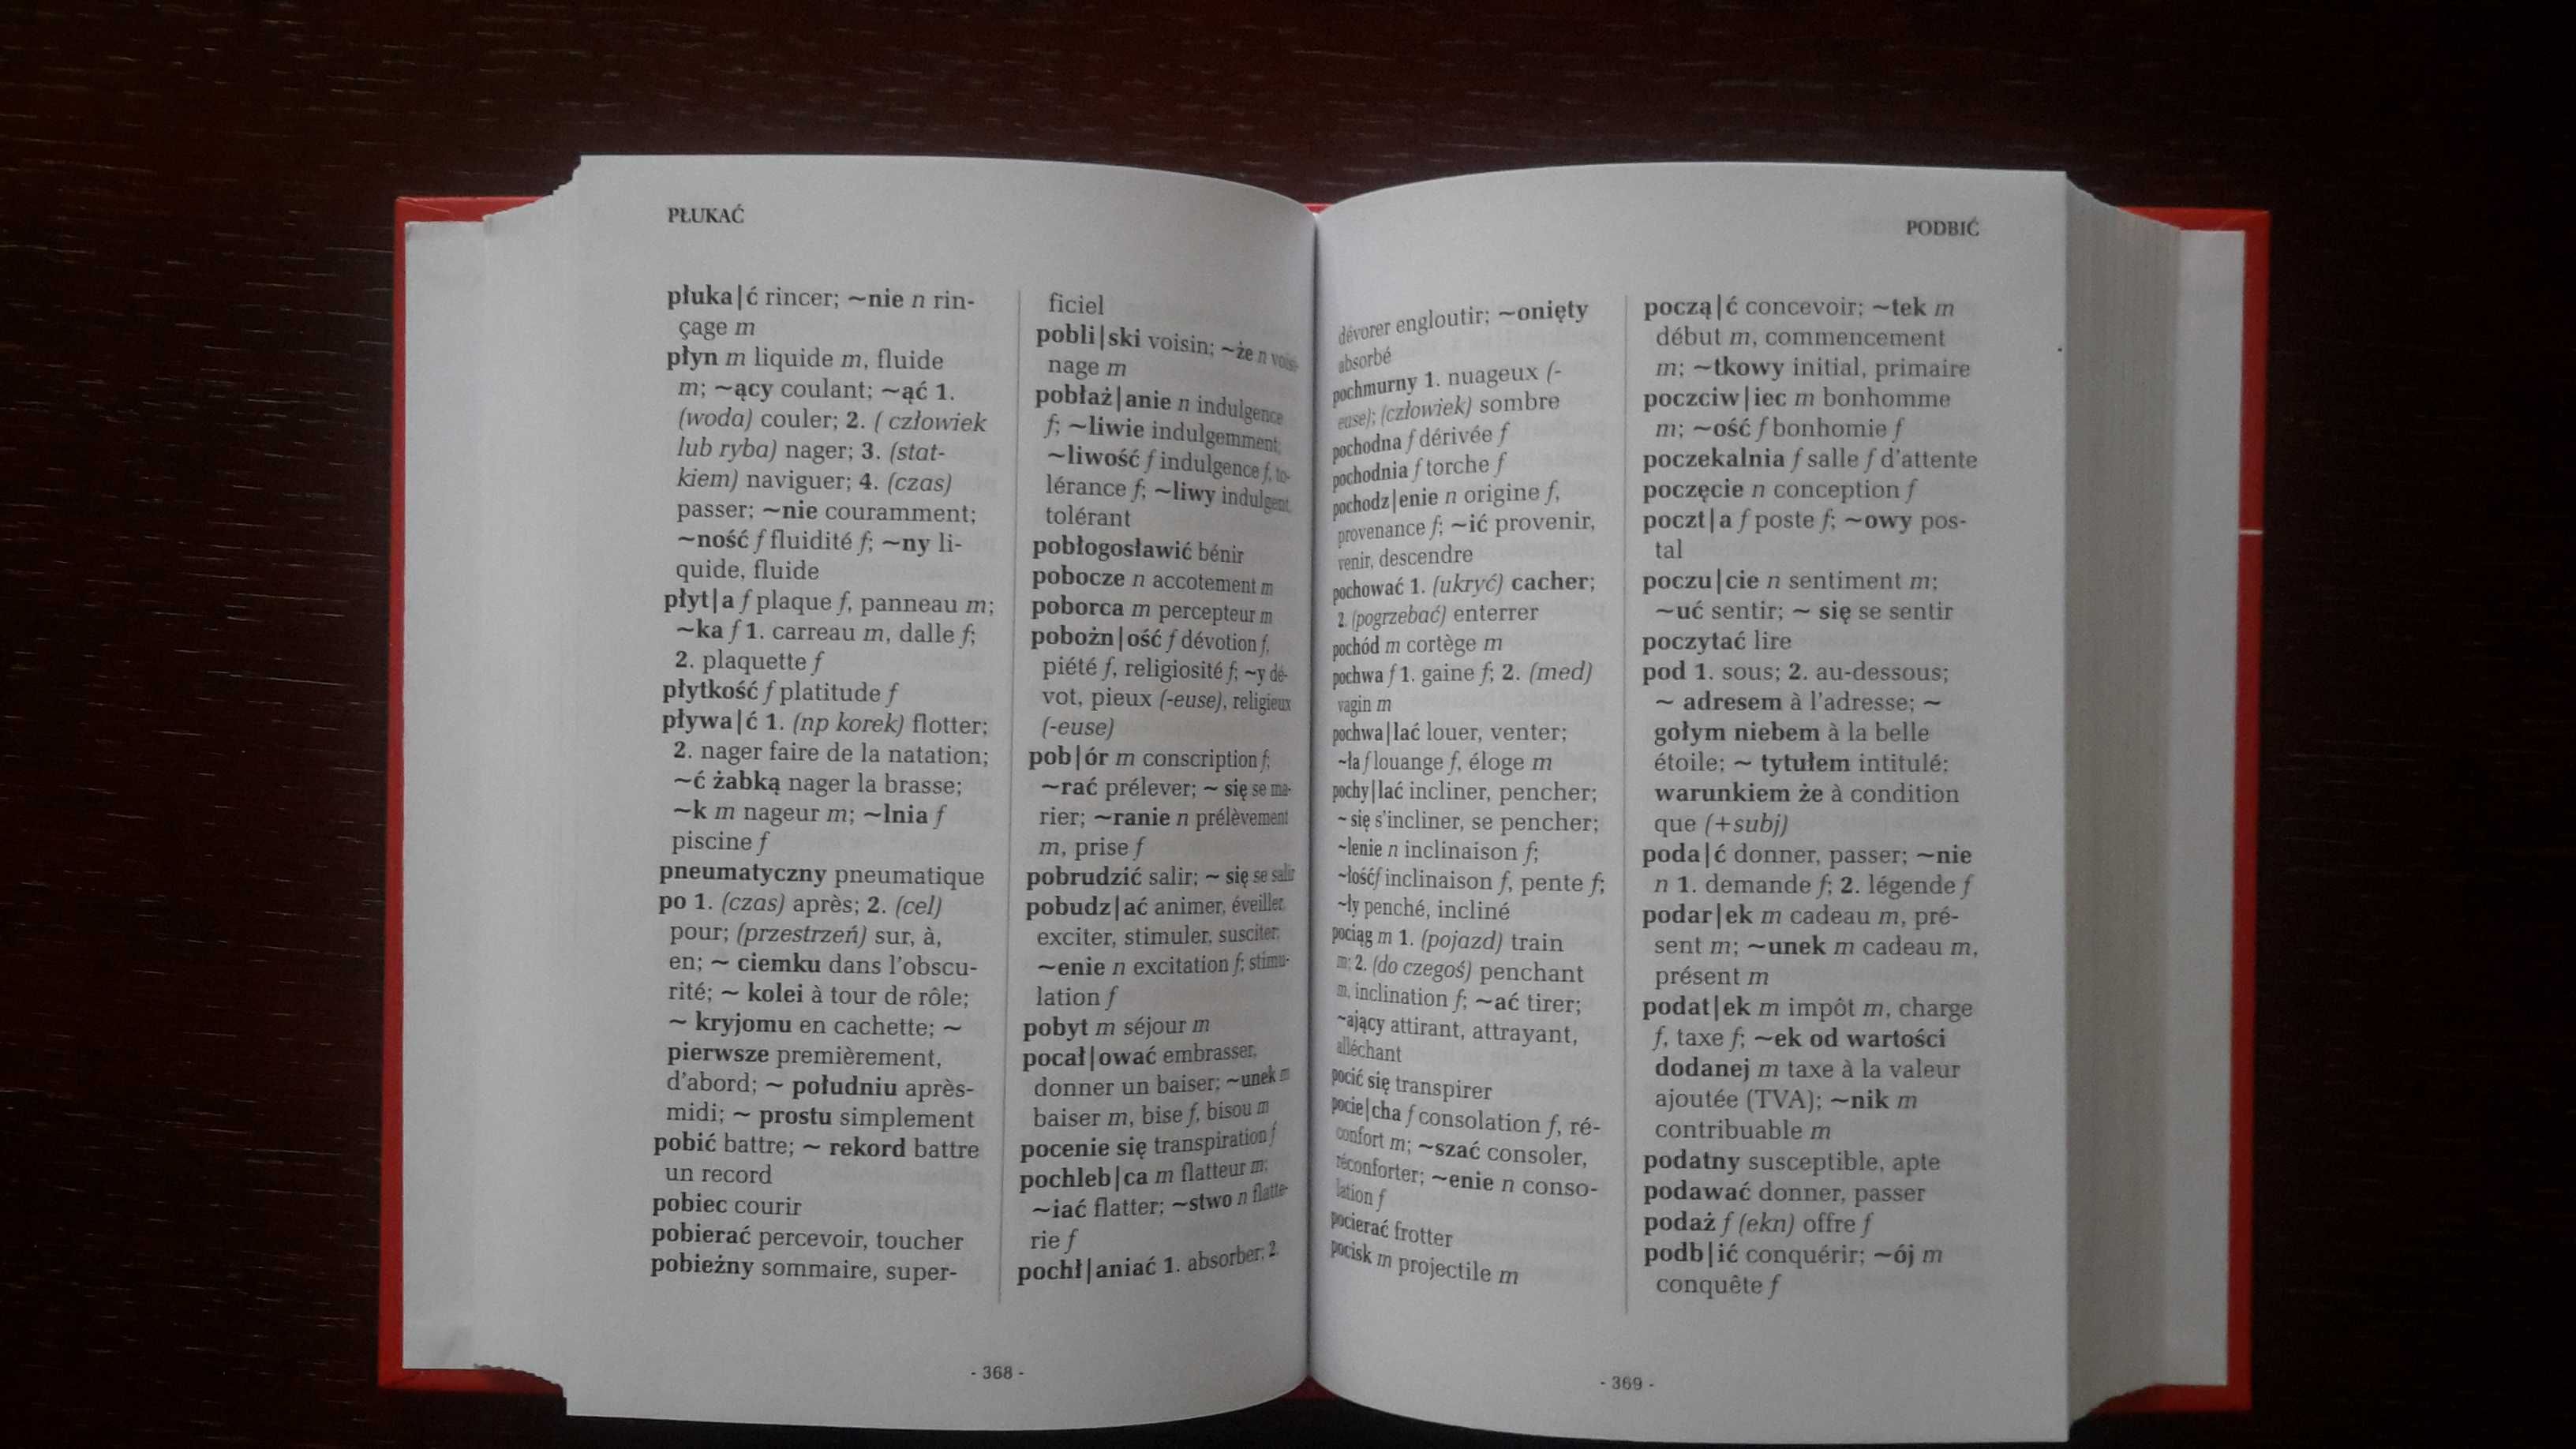 Słownik francusko - polski